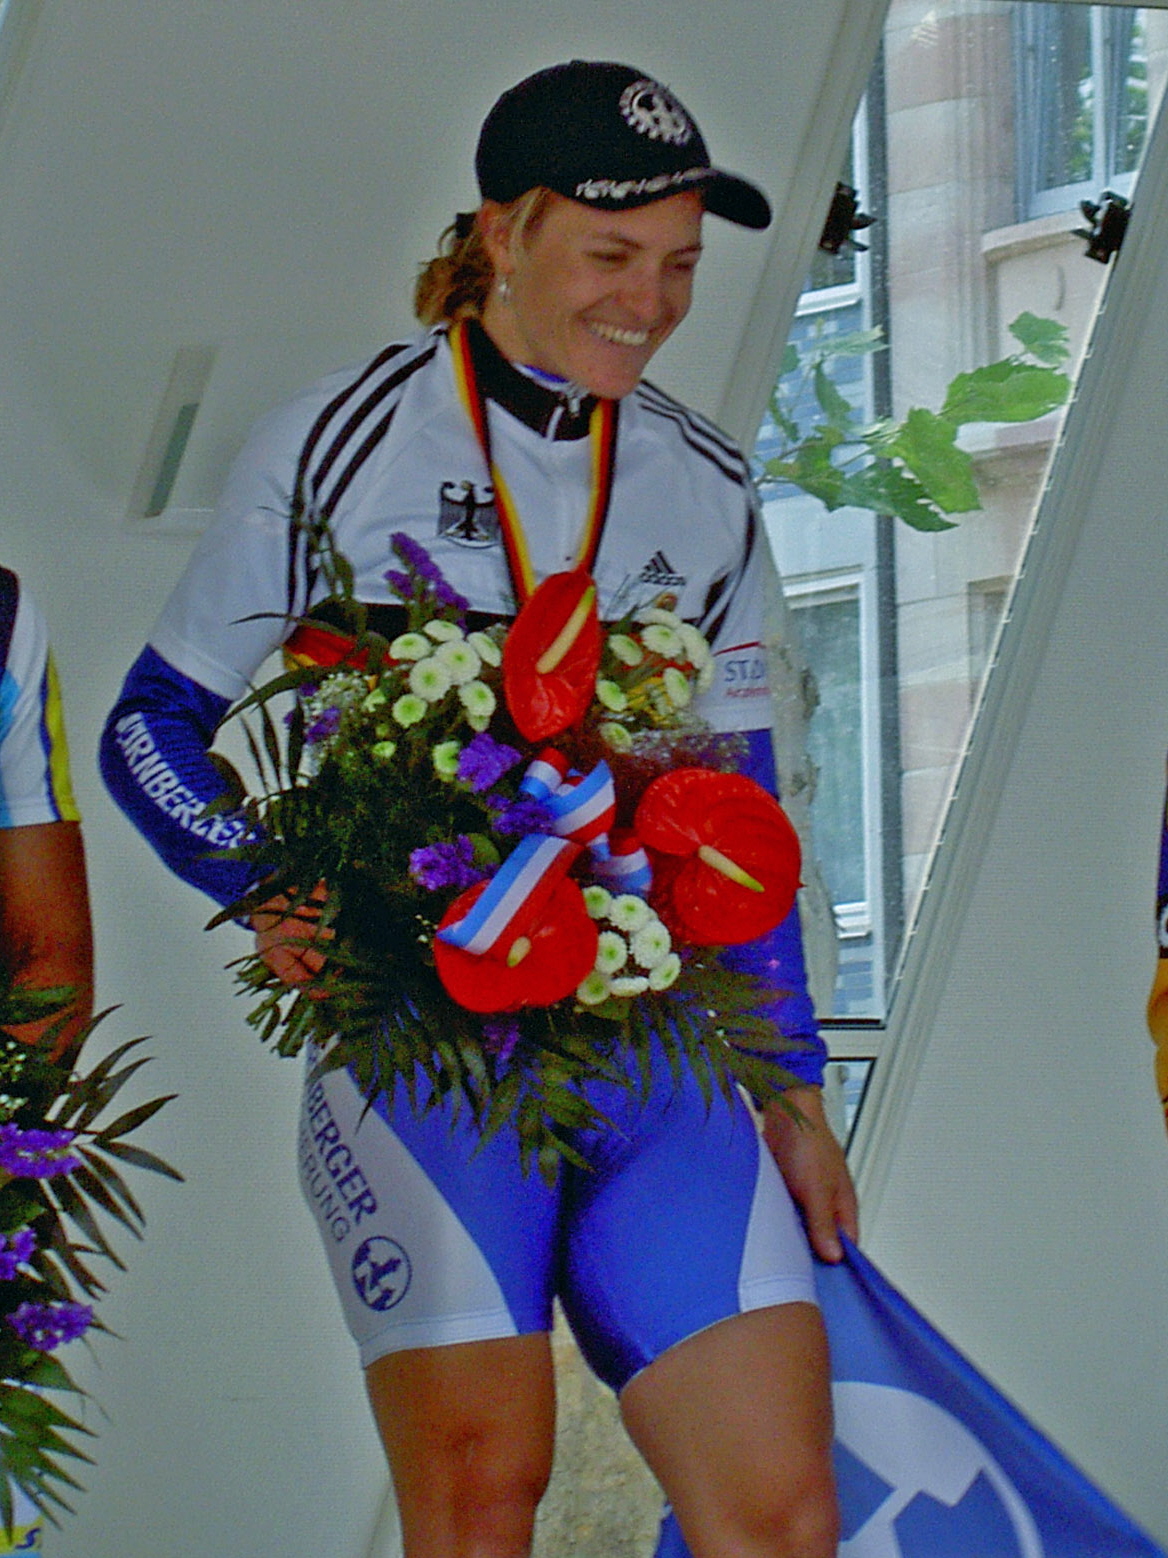 German cyclist Regina Schleicher at 2005